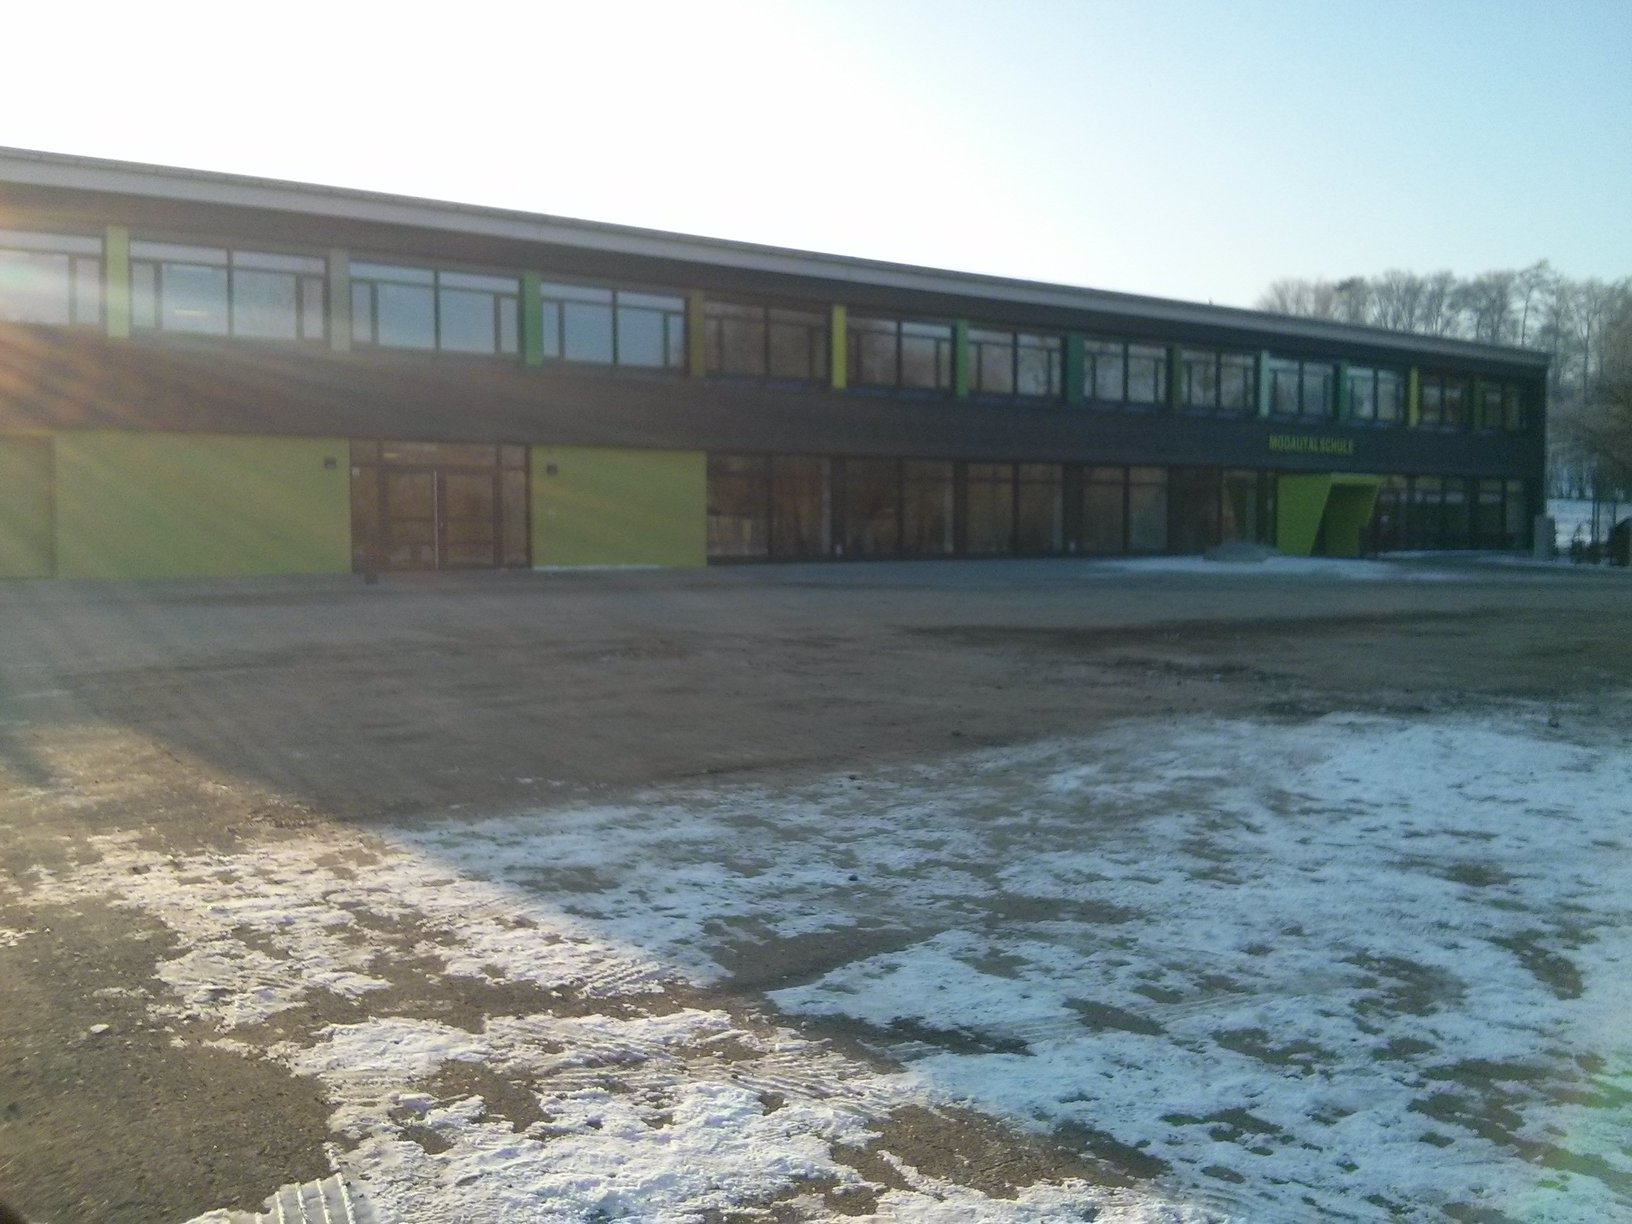 Freier Blick auf das Schulgebäude